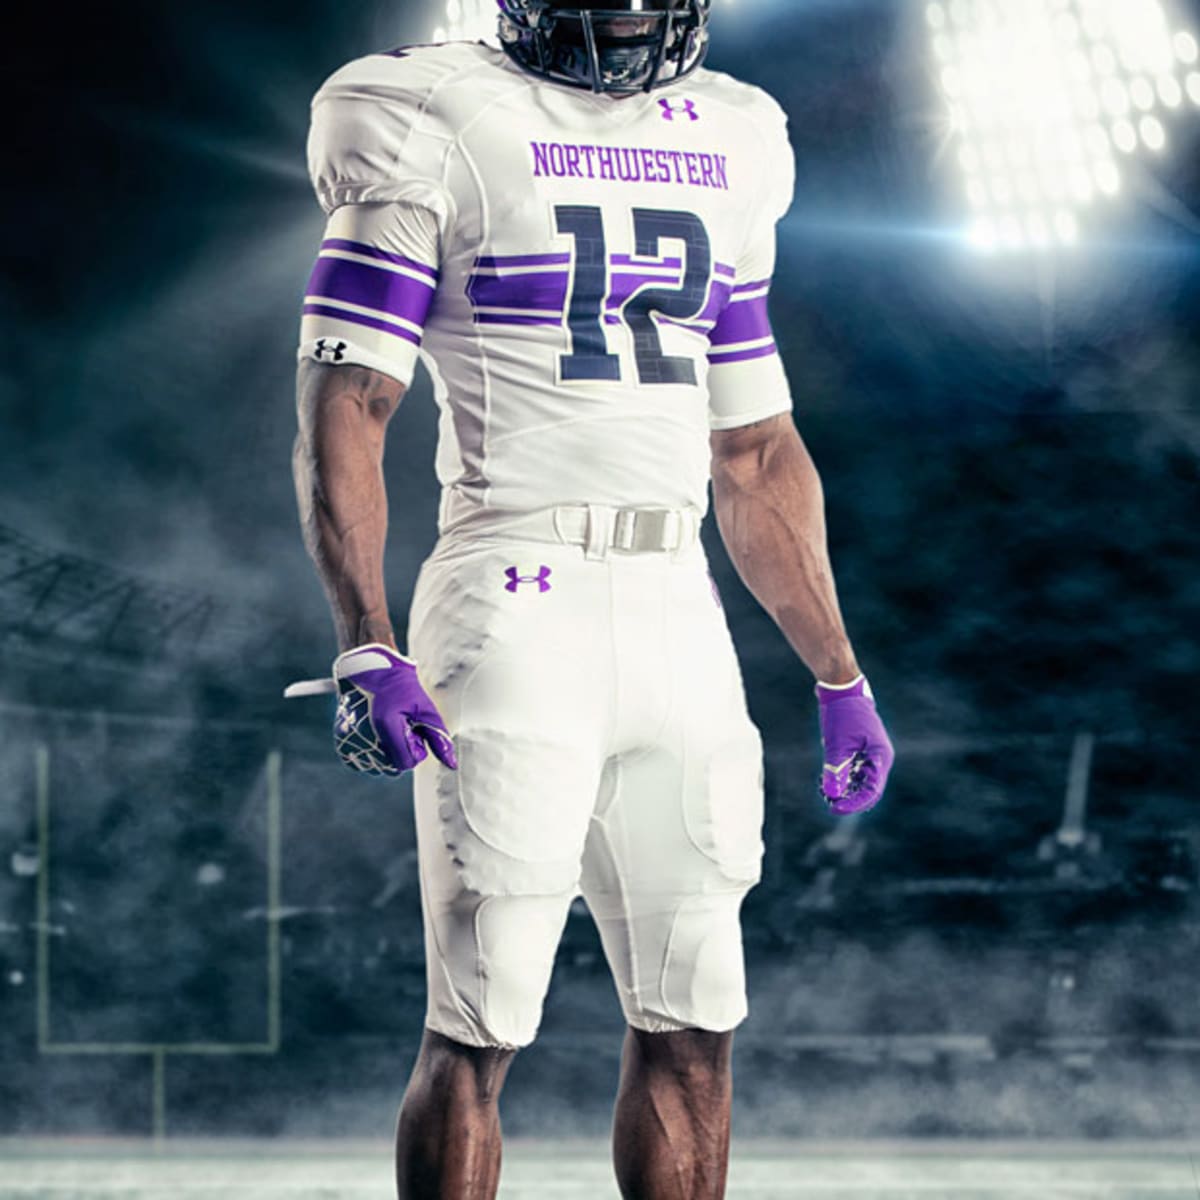 Northwestern's New Under Armour Uniform